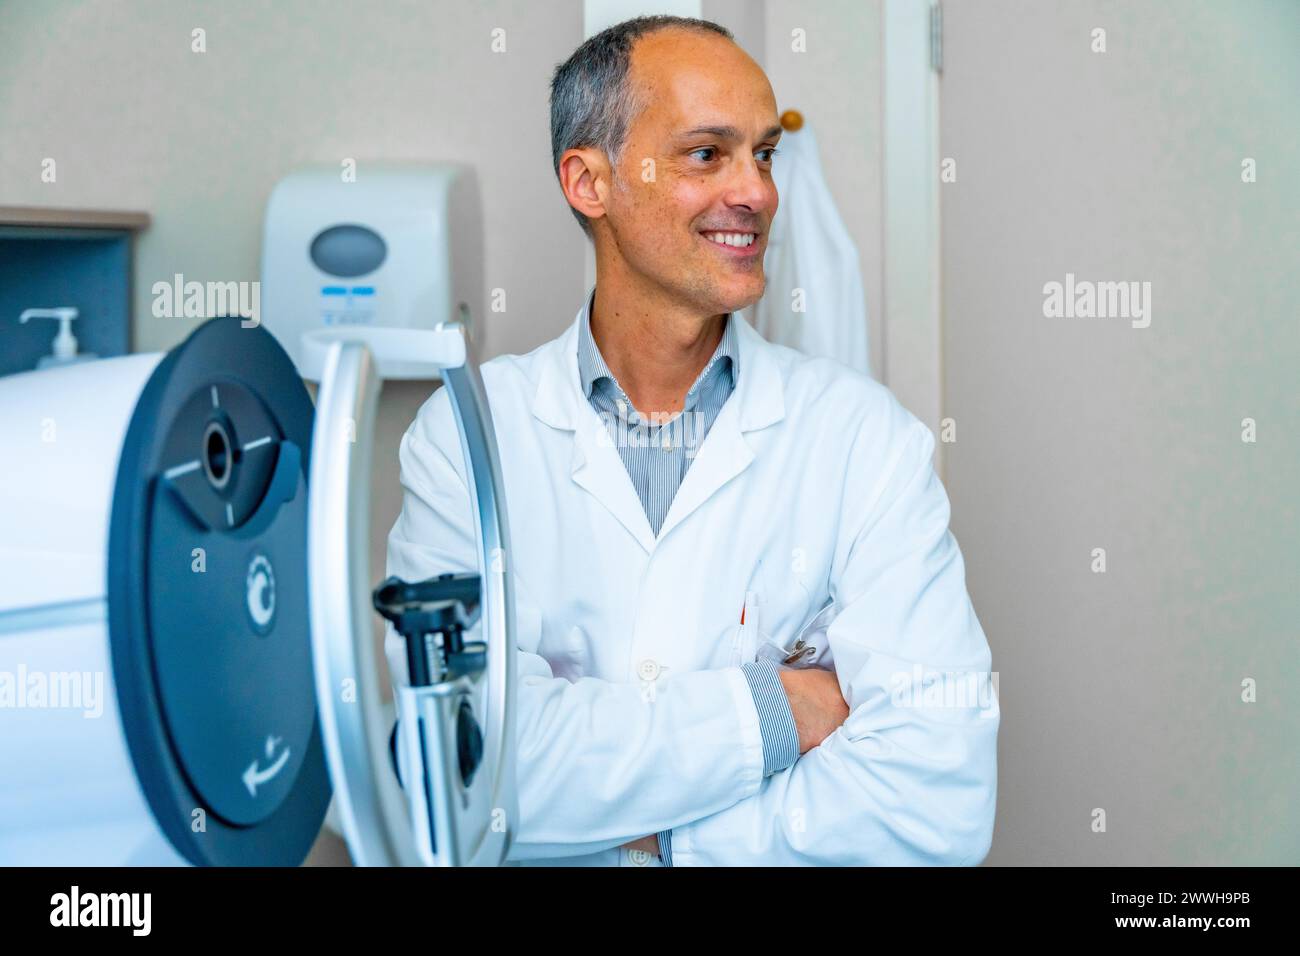 Fier ophtalmologiste masculin mature regardant distrait à côté d'une machine laser innovante dans une clinique Banque D'Images